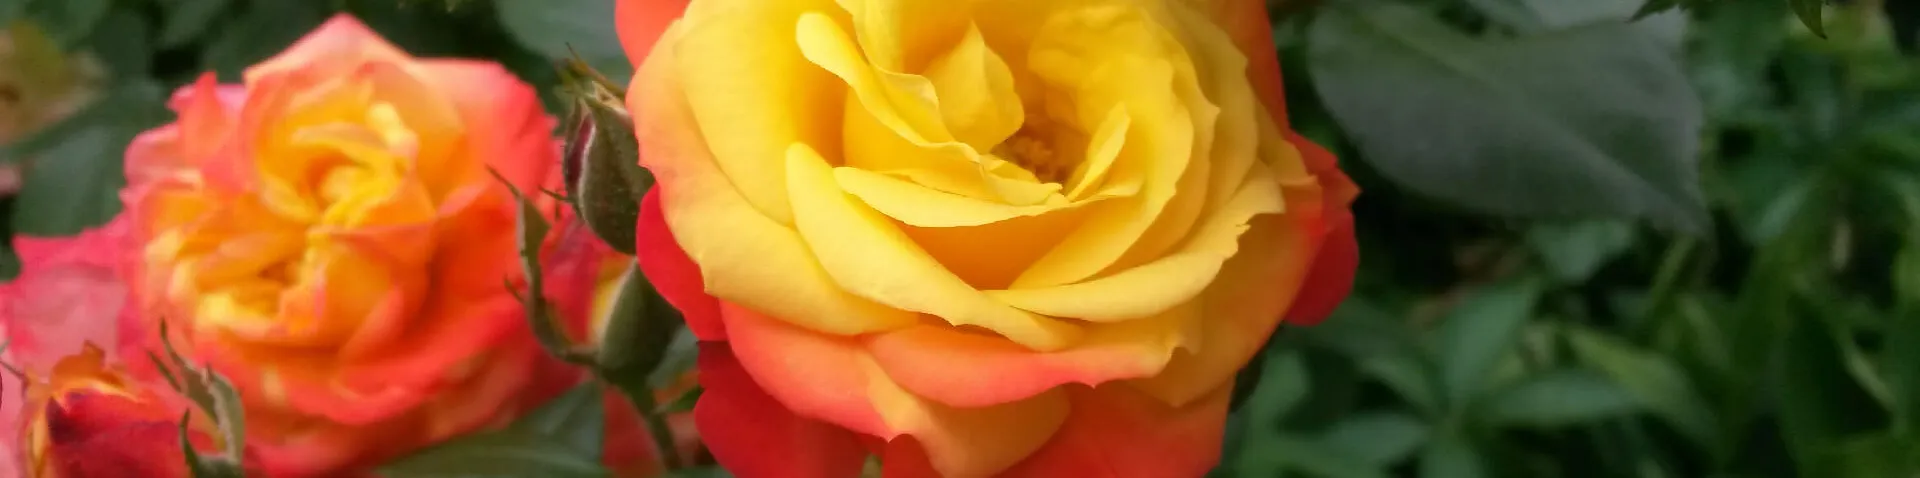 Gelb-rote Rosen